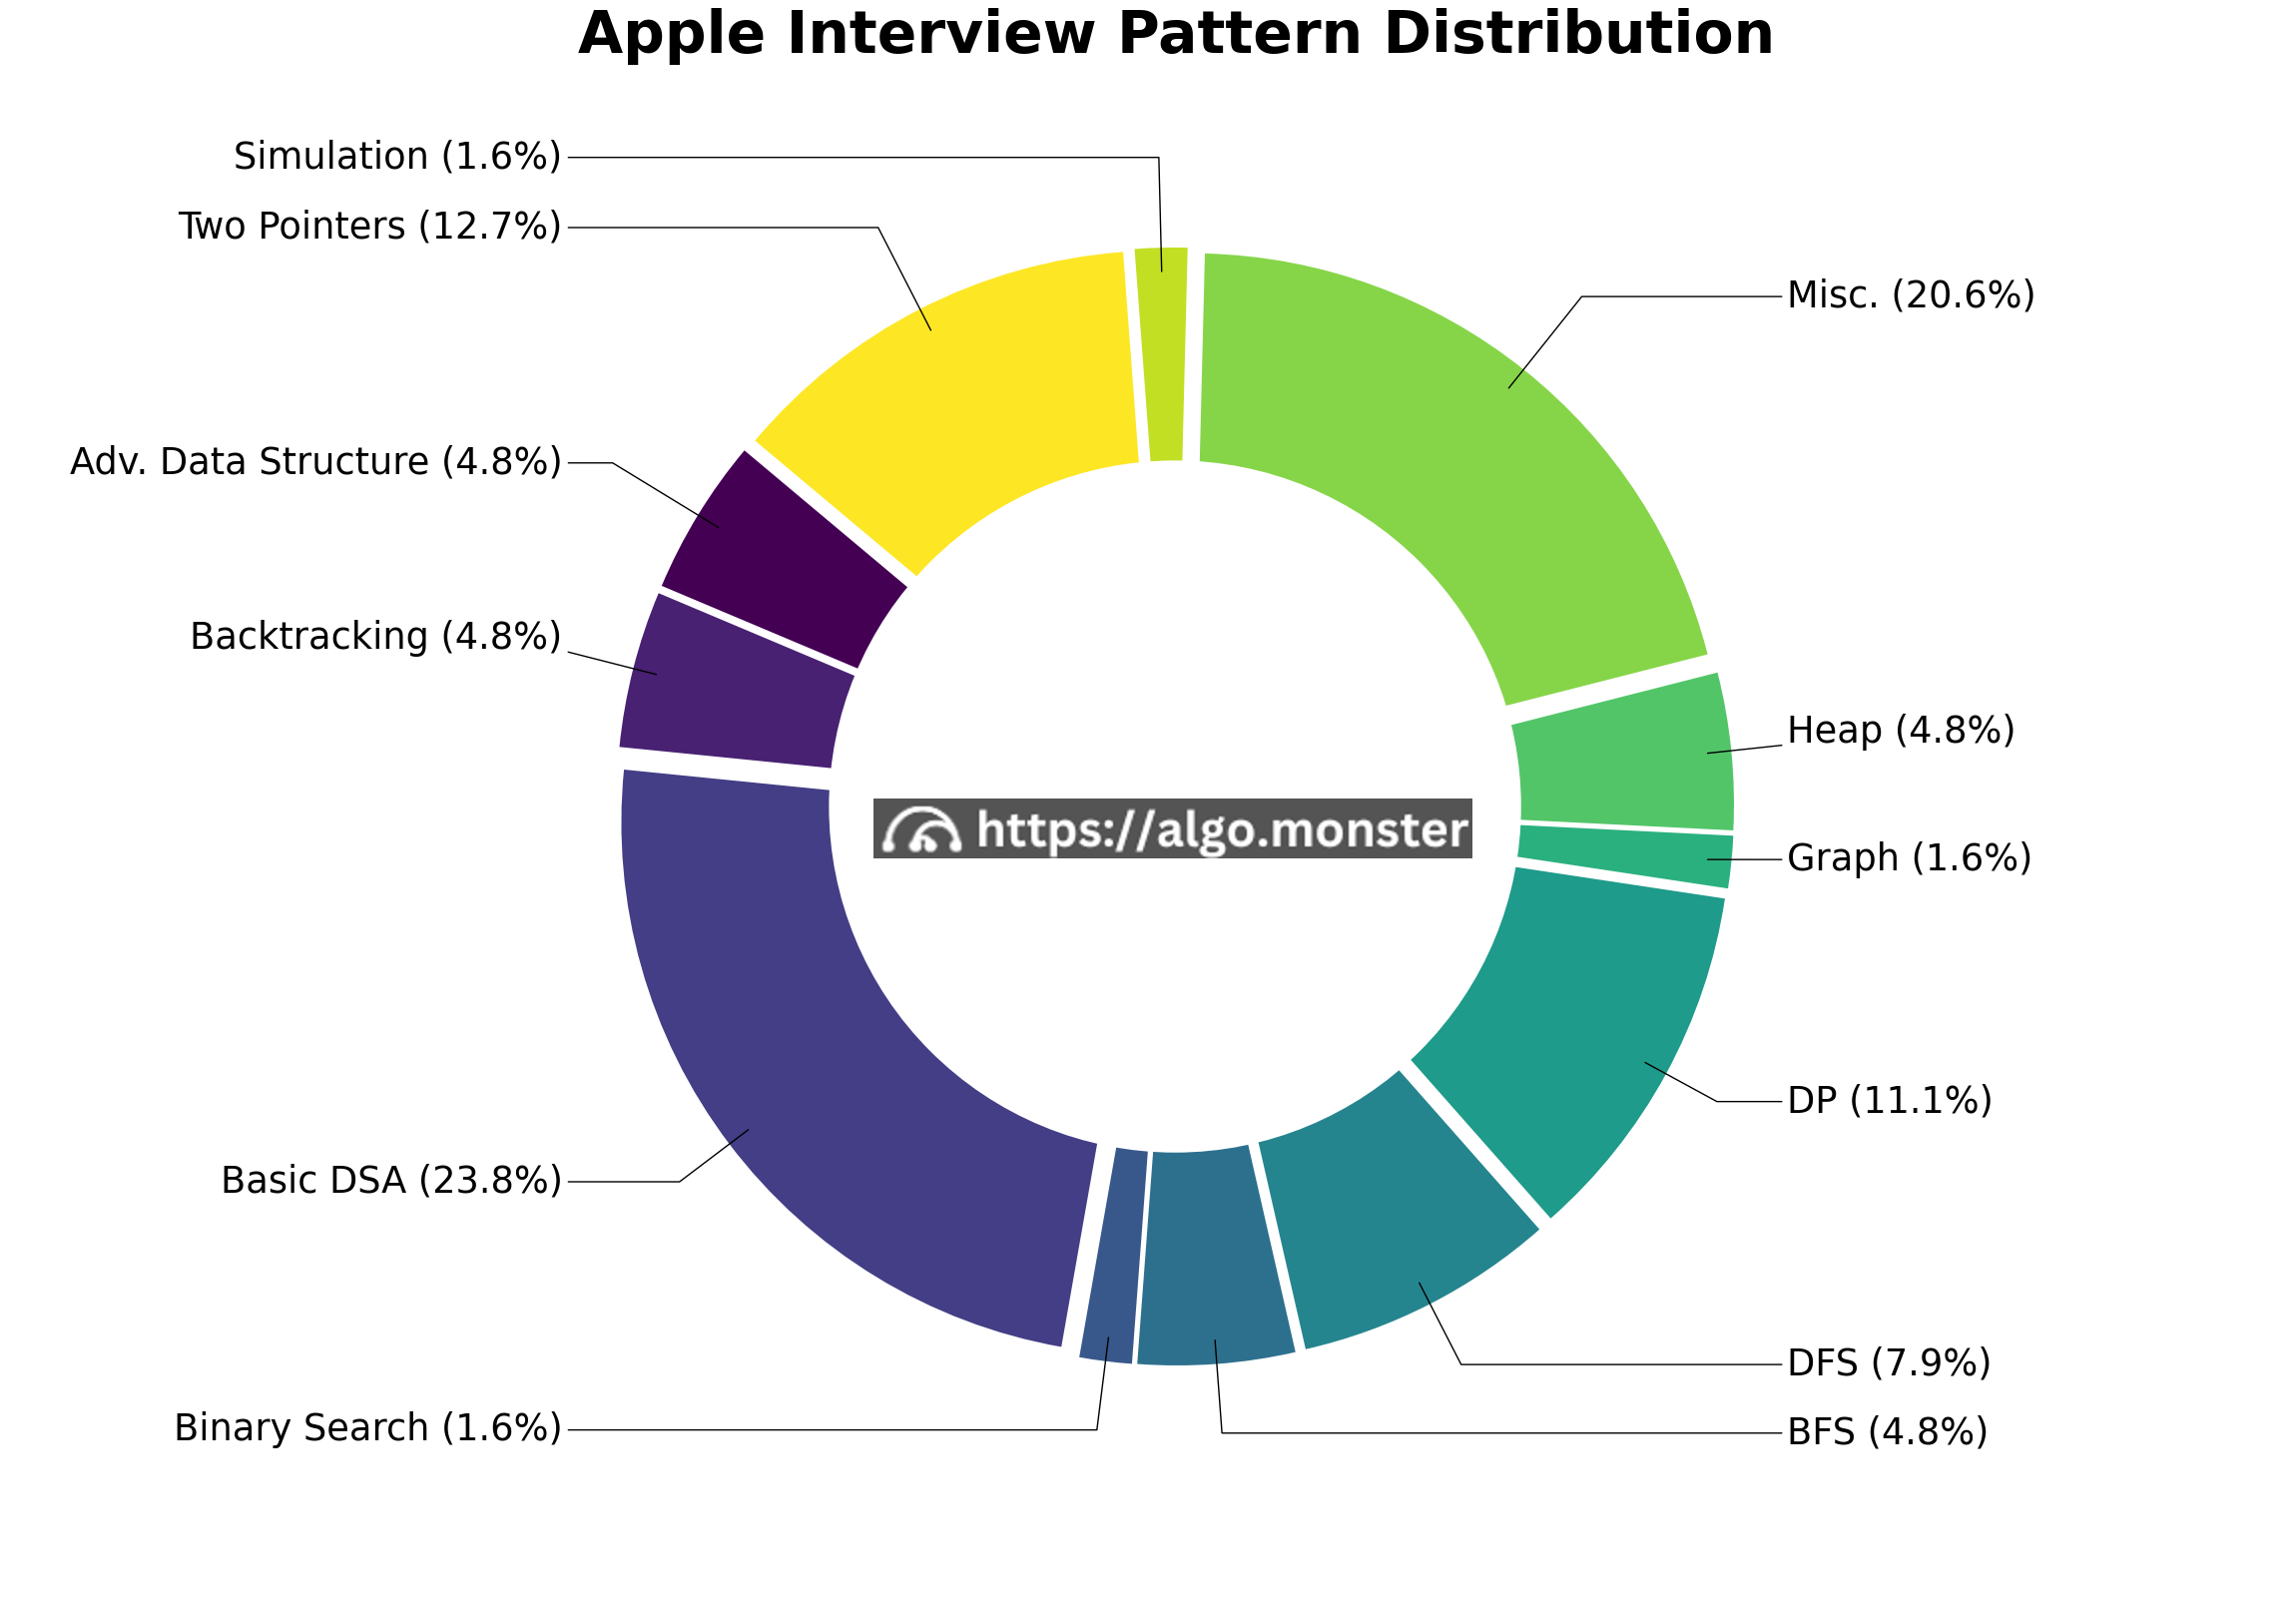 Apple interview questions breakdown